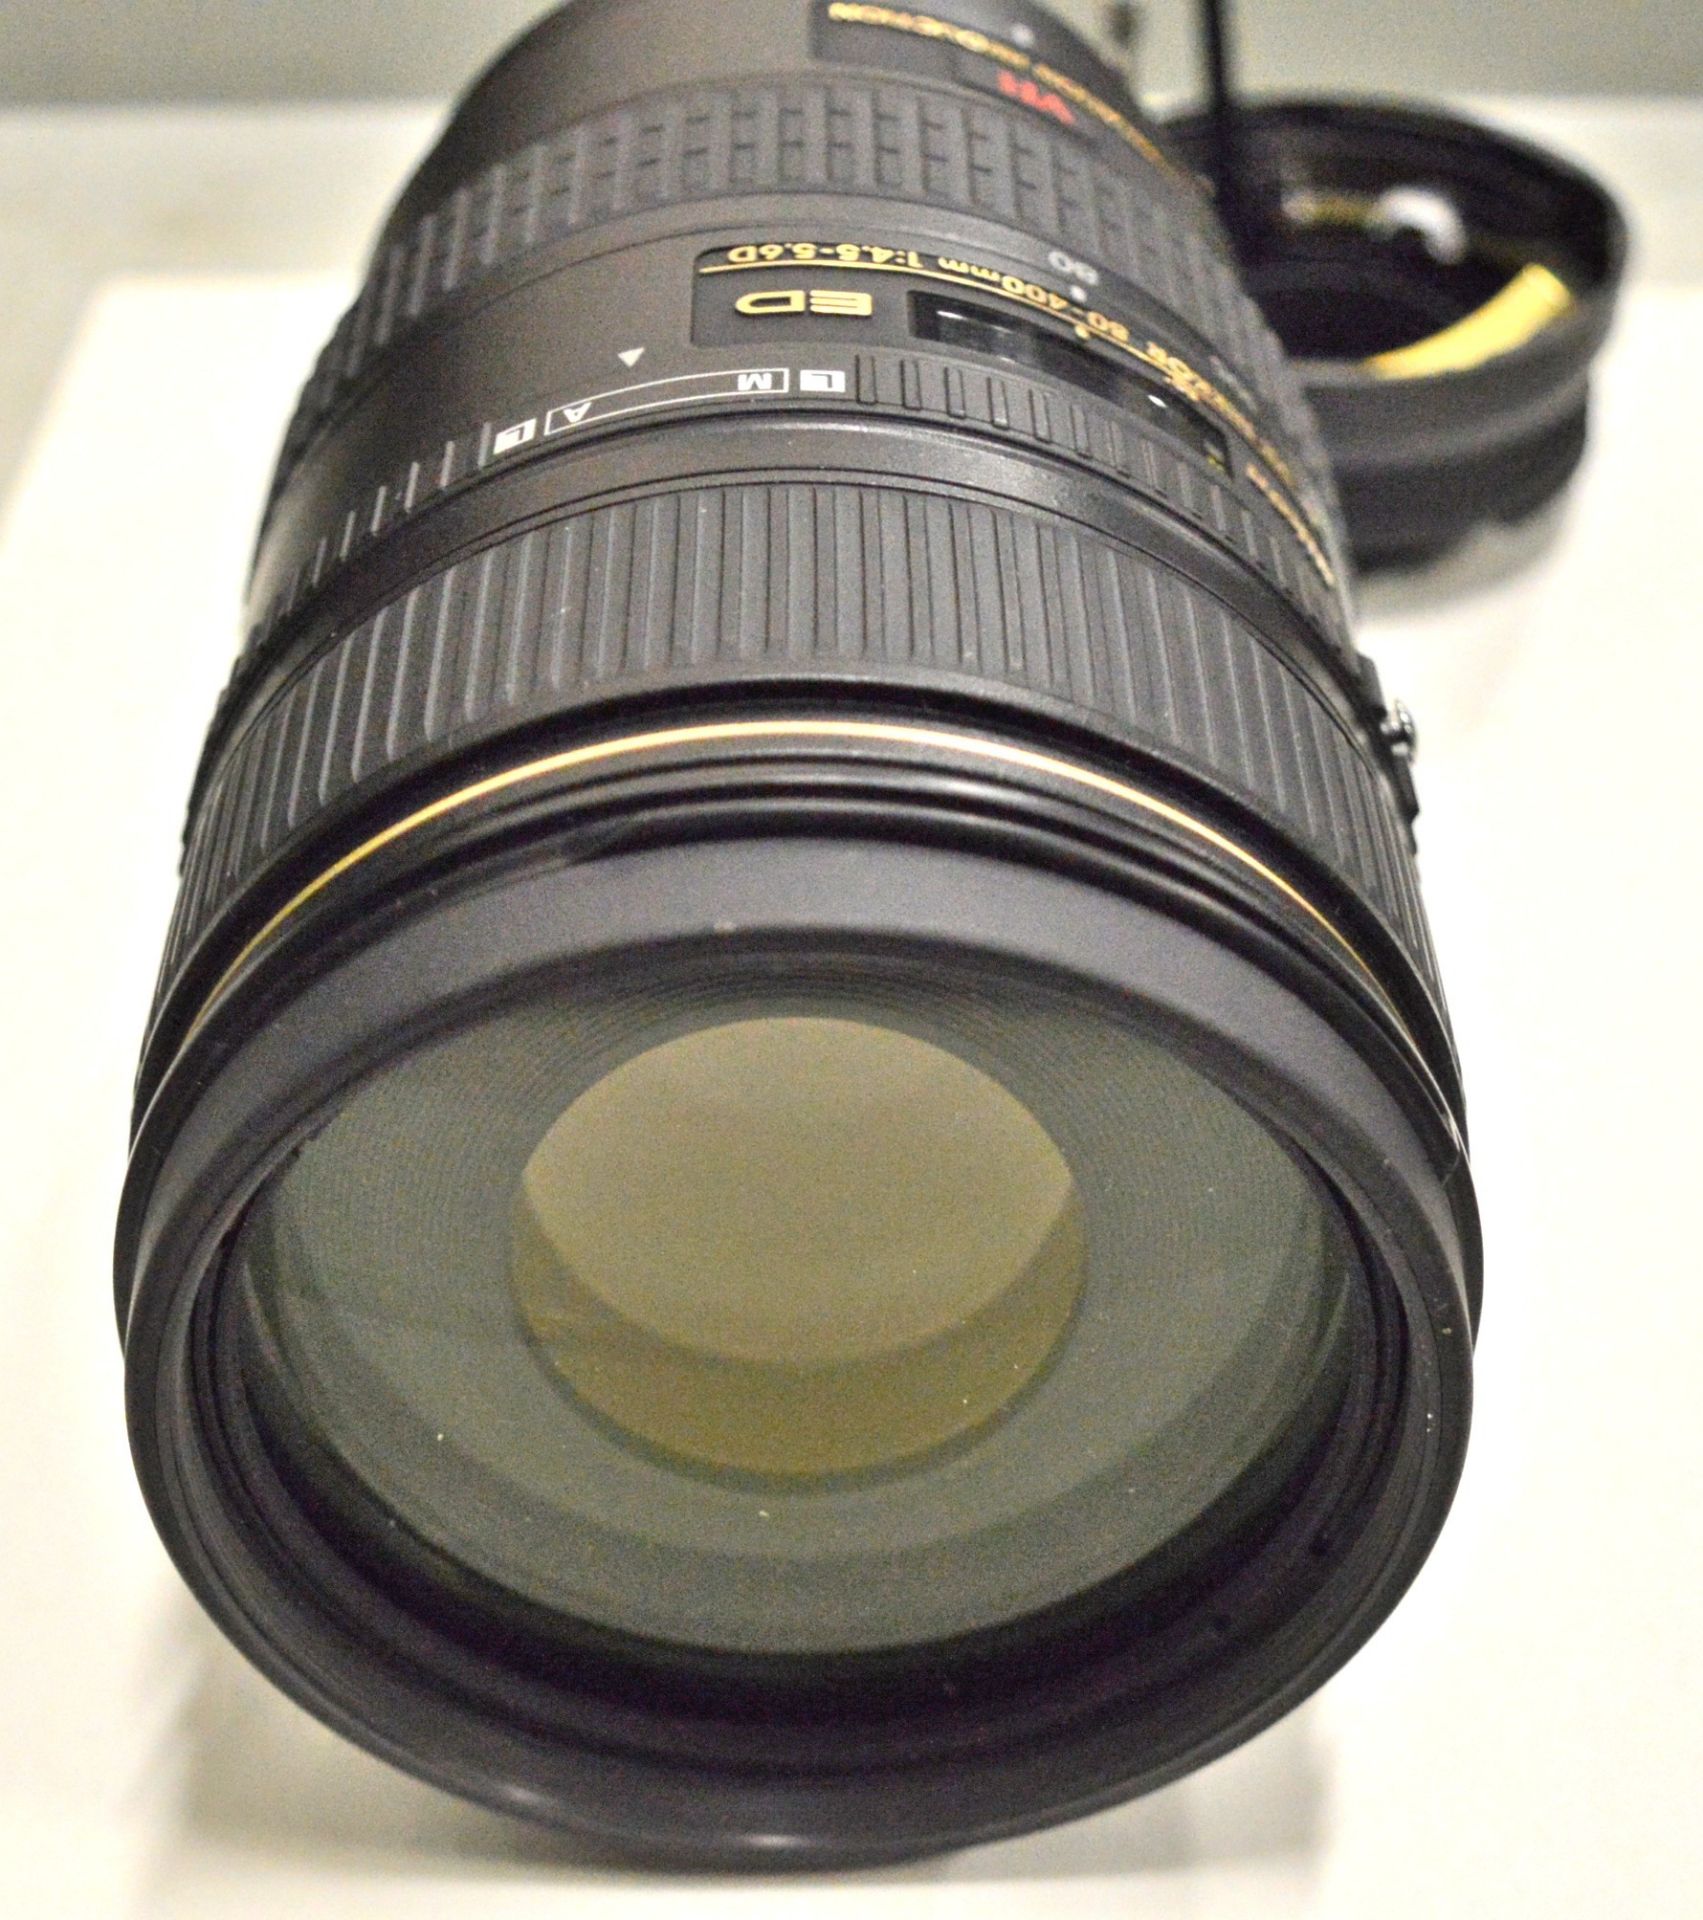 Nikon Lens AF-Nikkor 80-400mm 1:4.5-5.6D - Serial No. 412575. - Image 5 of 6